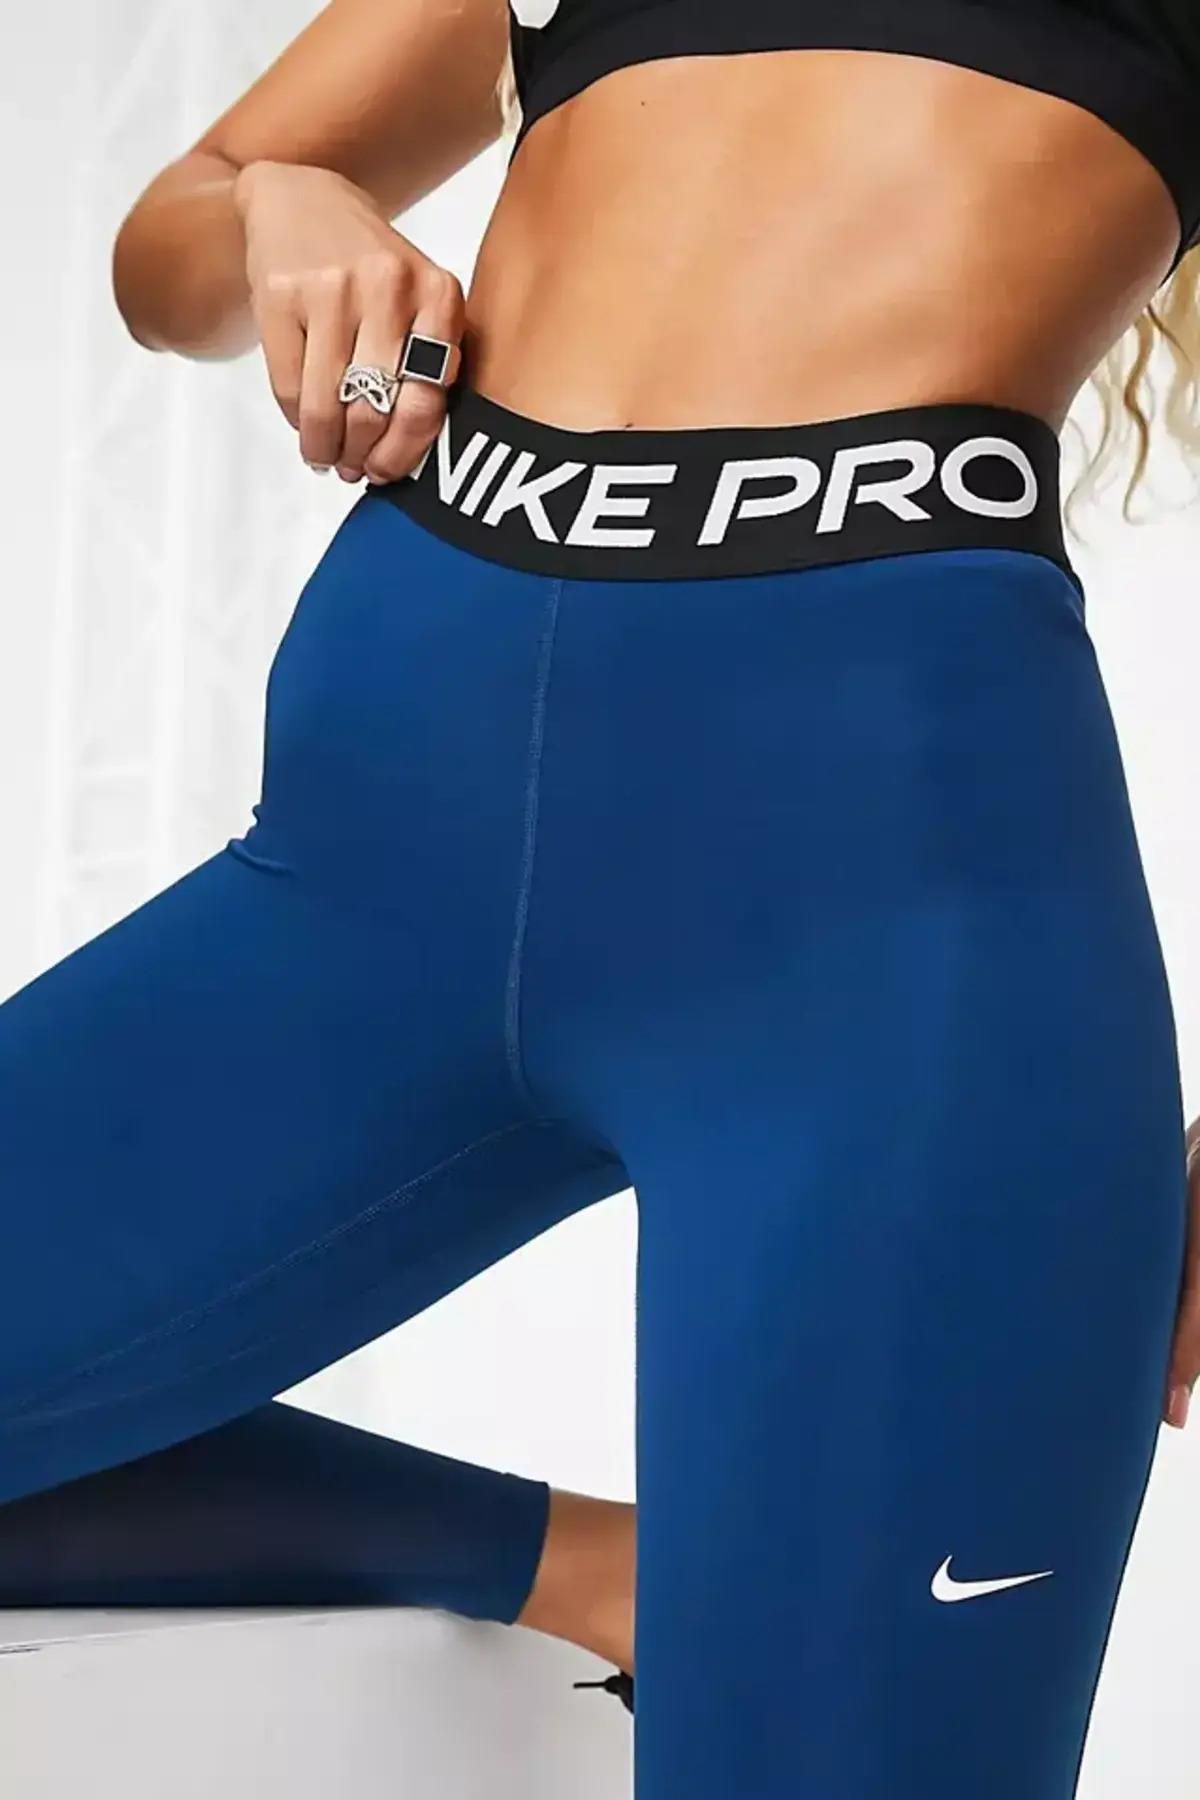 Nike Pro Normal Belli File Panelli Siyah Kadın Tayt Fiyatı, Yorumları -  Trendyol